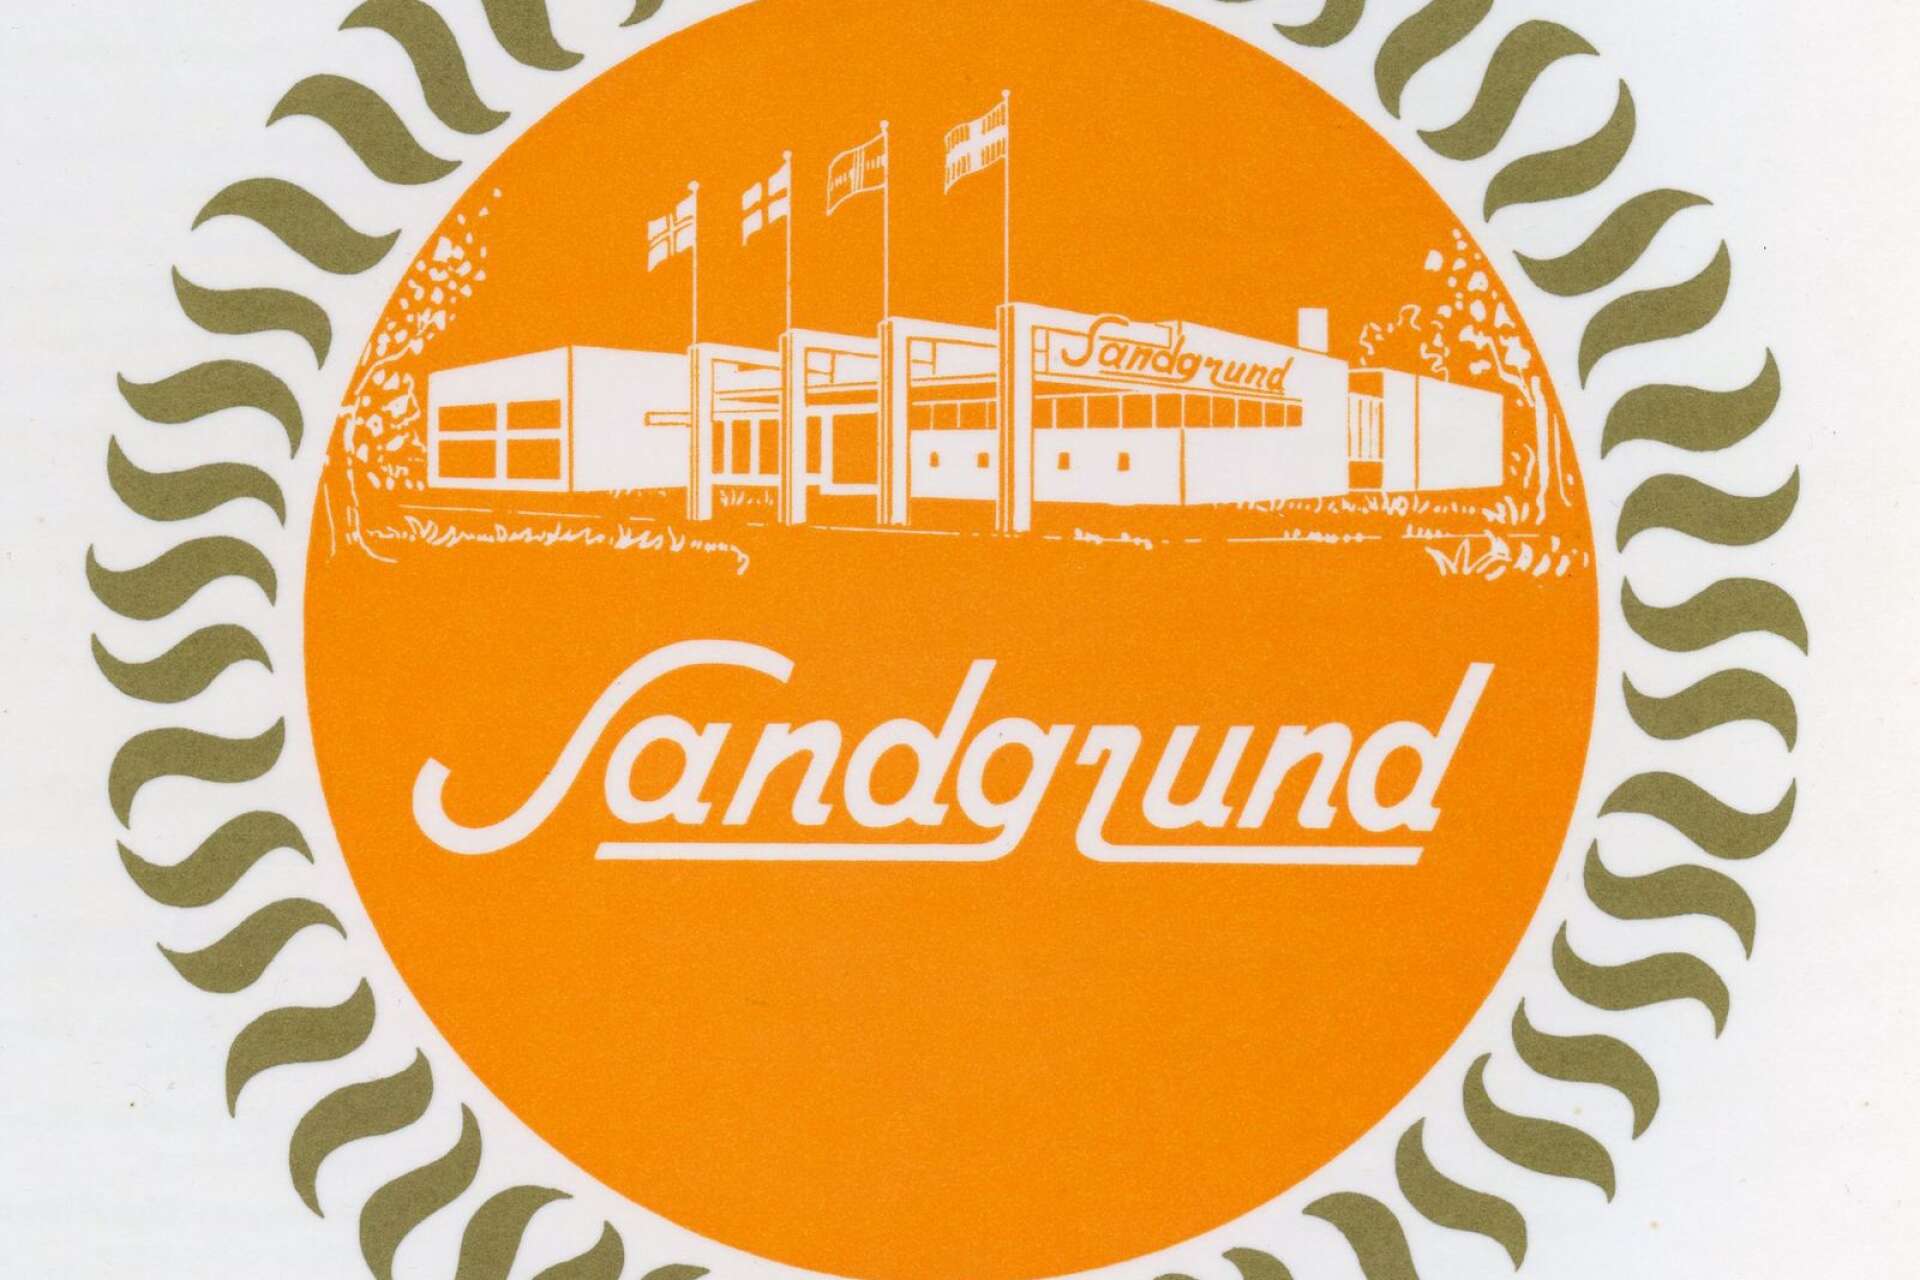 Efter bara drygt fyra månaders byggtid stod Restaurang Sandgrund färdigt för invigning den 27 maj 1960. Här ses den välkända logotypen.